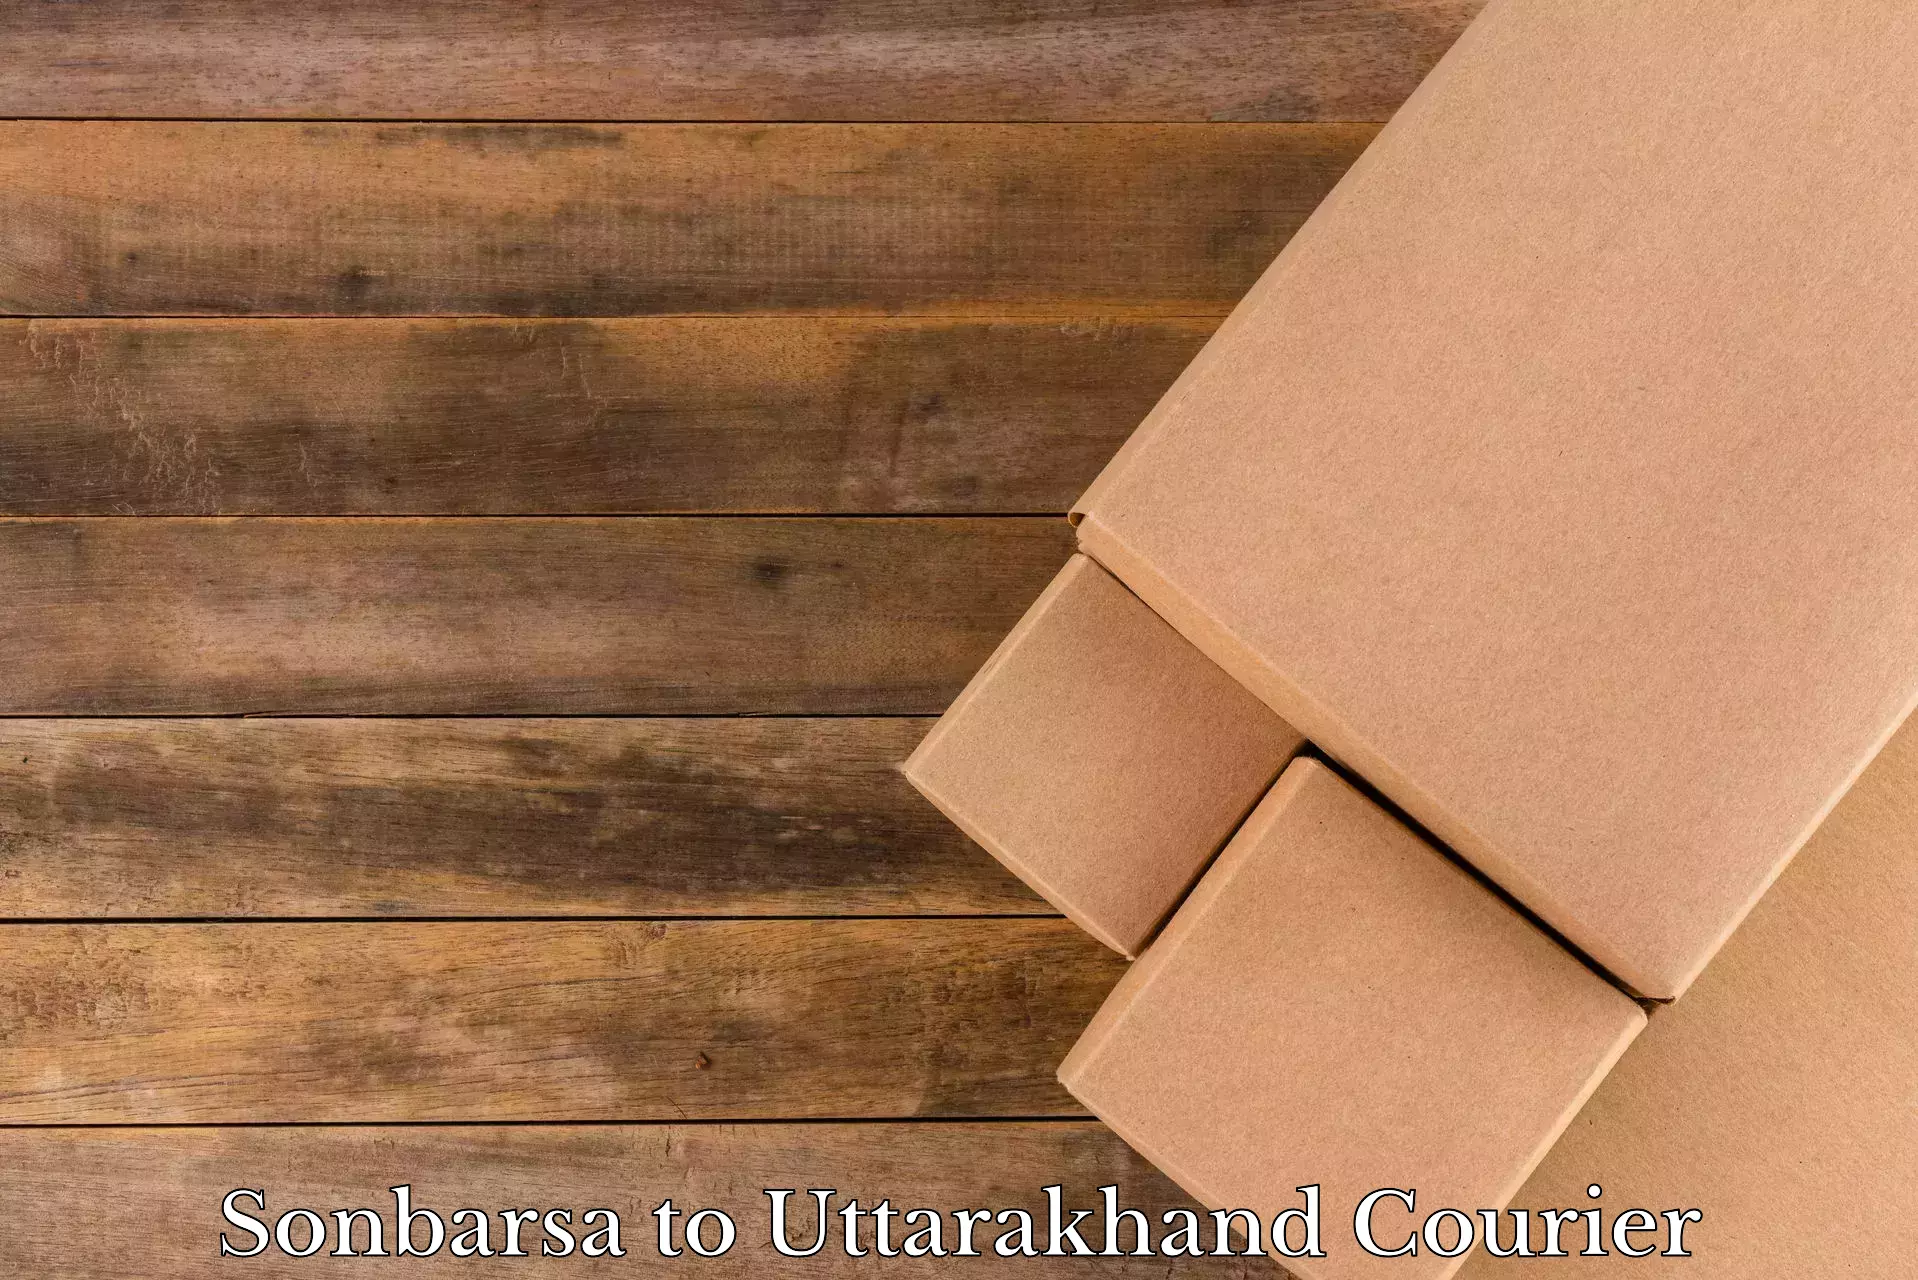 Expert household movers in Sonbarsa to Uttarakhand